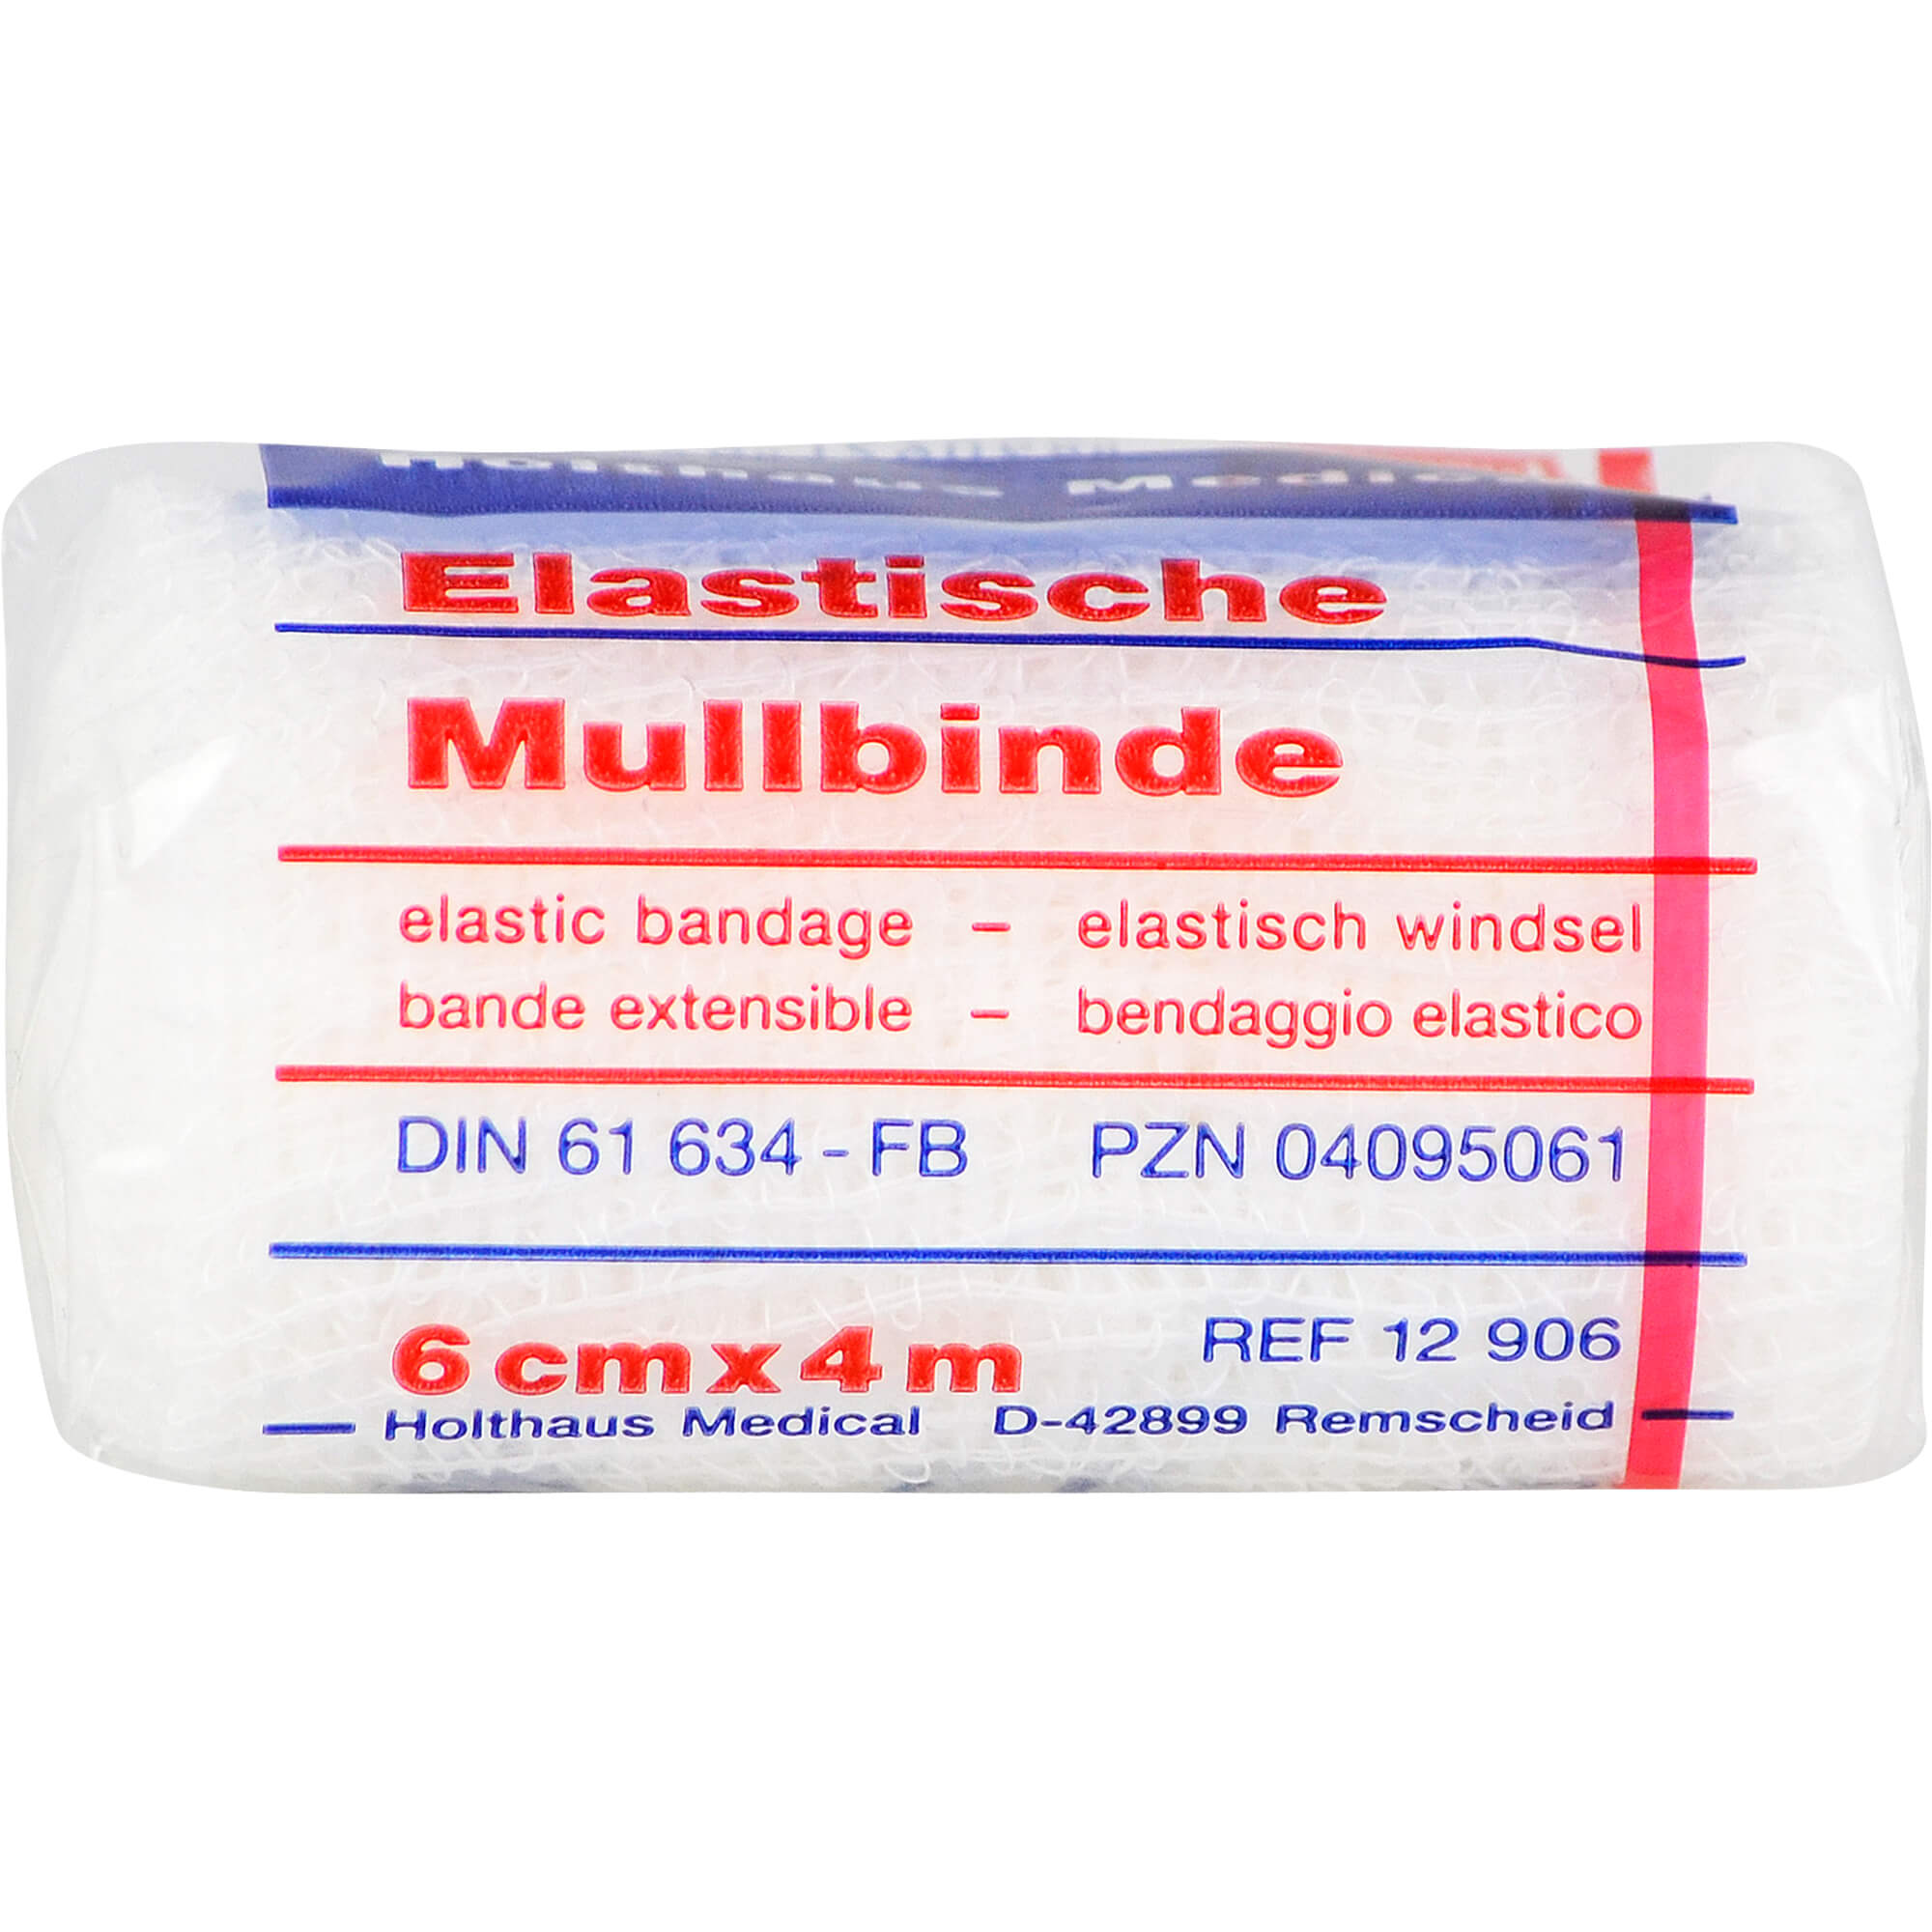 MULLBINDEN-elastisch-6-cmx4-m